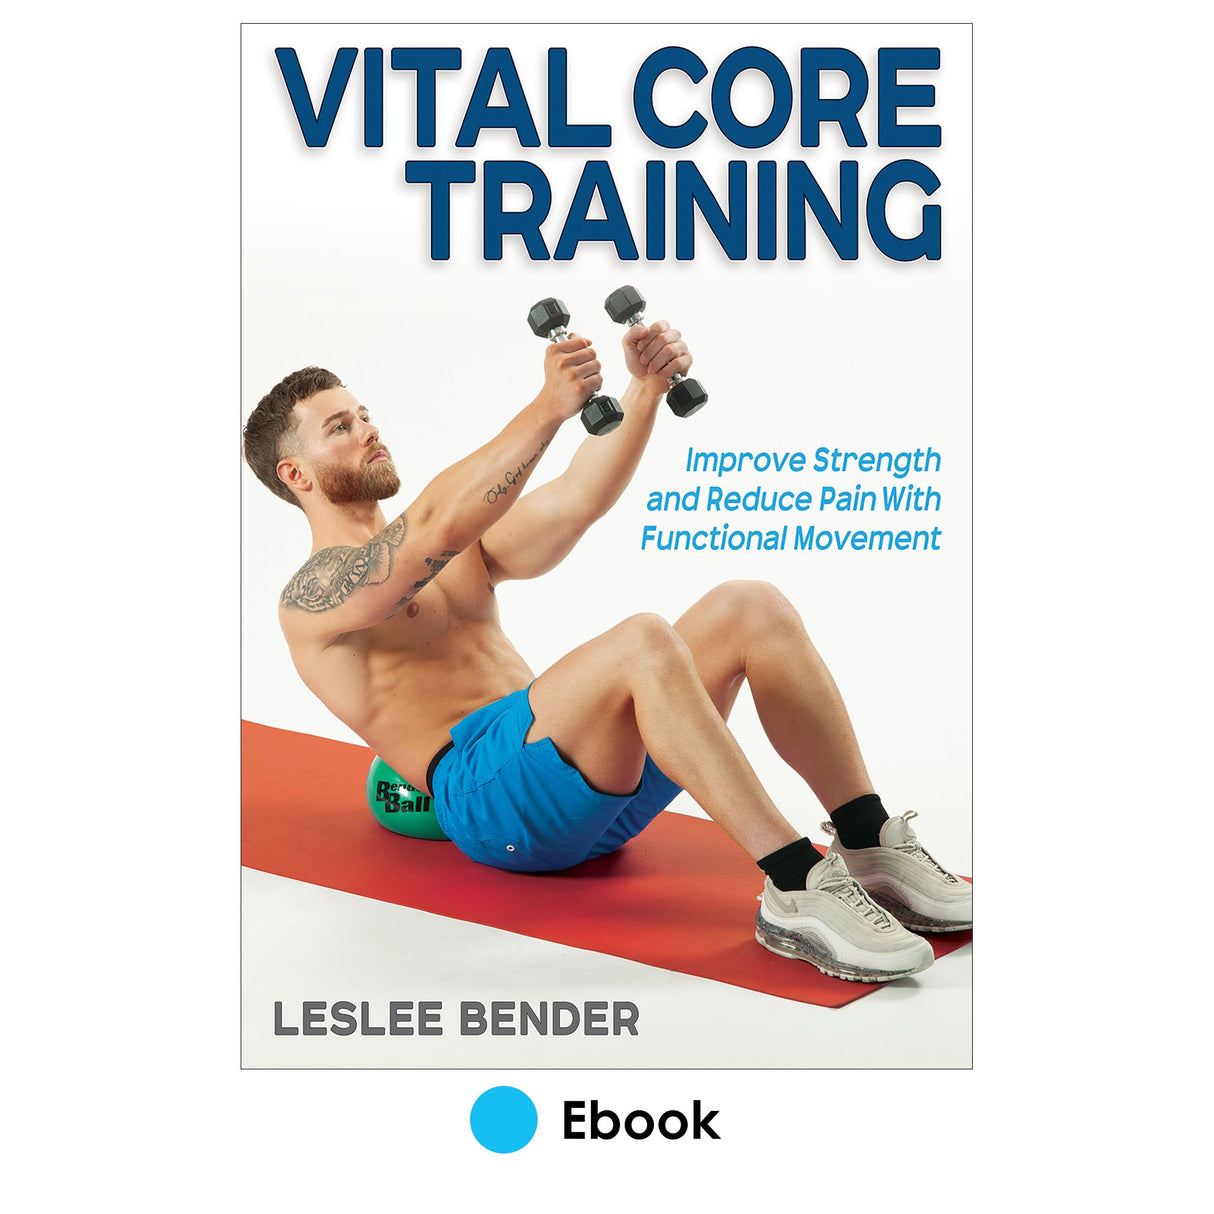 Vital Core Training epub